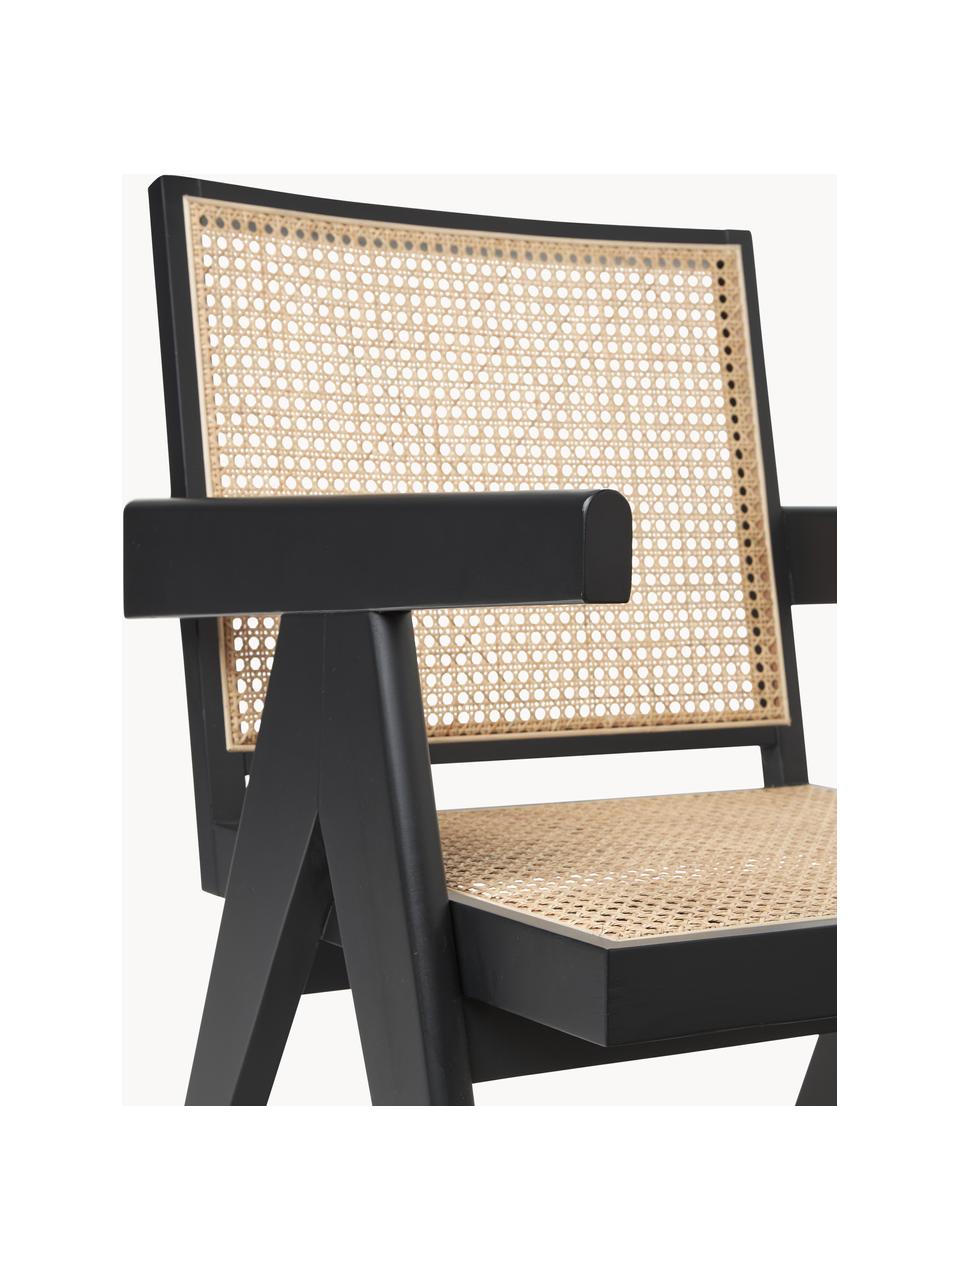 Fotel wypoczynkowy z plecionką wiedeńską Sissi, Stelaż: lite drewno bukowe lakier, Rattan, czarny, S 58 x G 66 cm